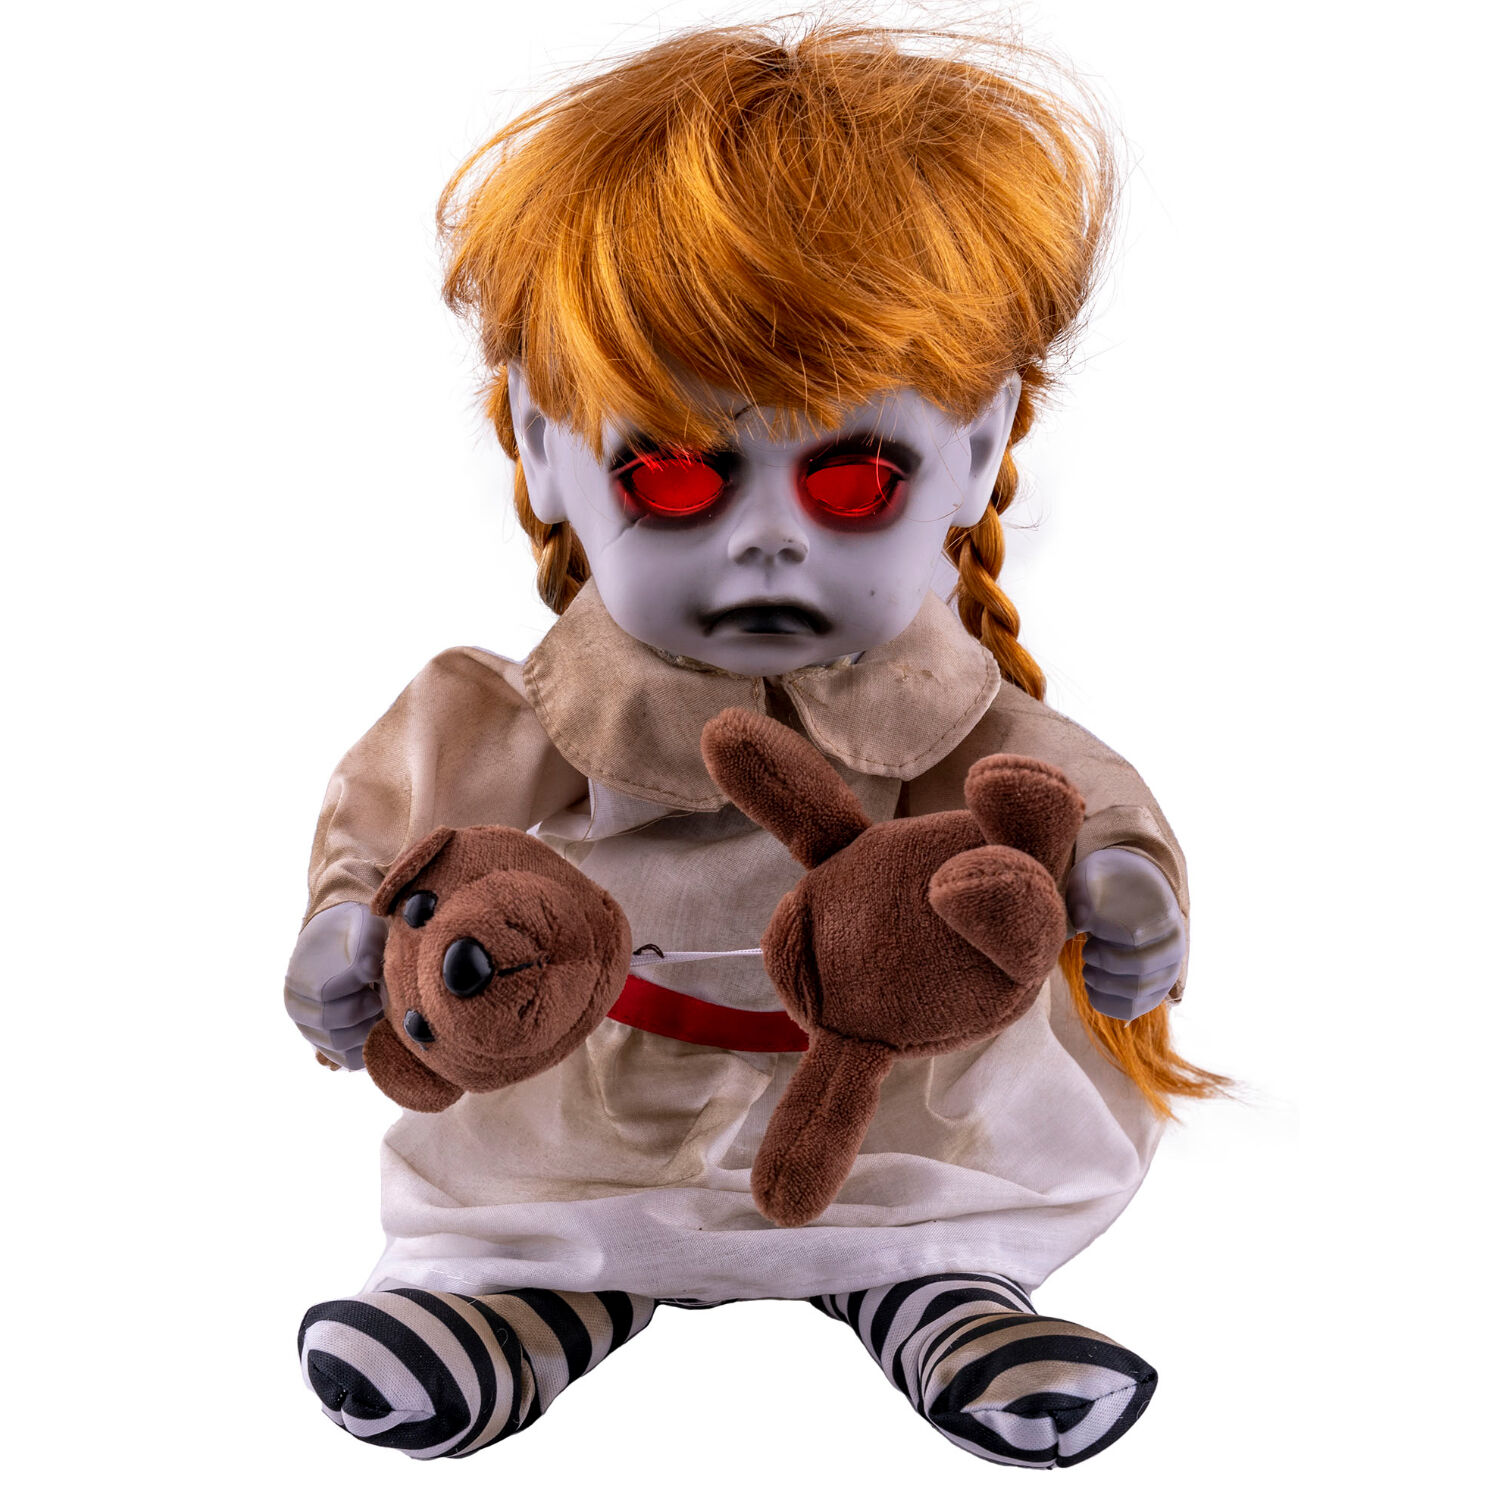 NEU Halloween-Deko-Figur Mdchen mit Teddy, mit Licht, Sound und Bewegung, batteriebetrieben, ca. 15x17x25cm